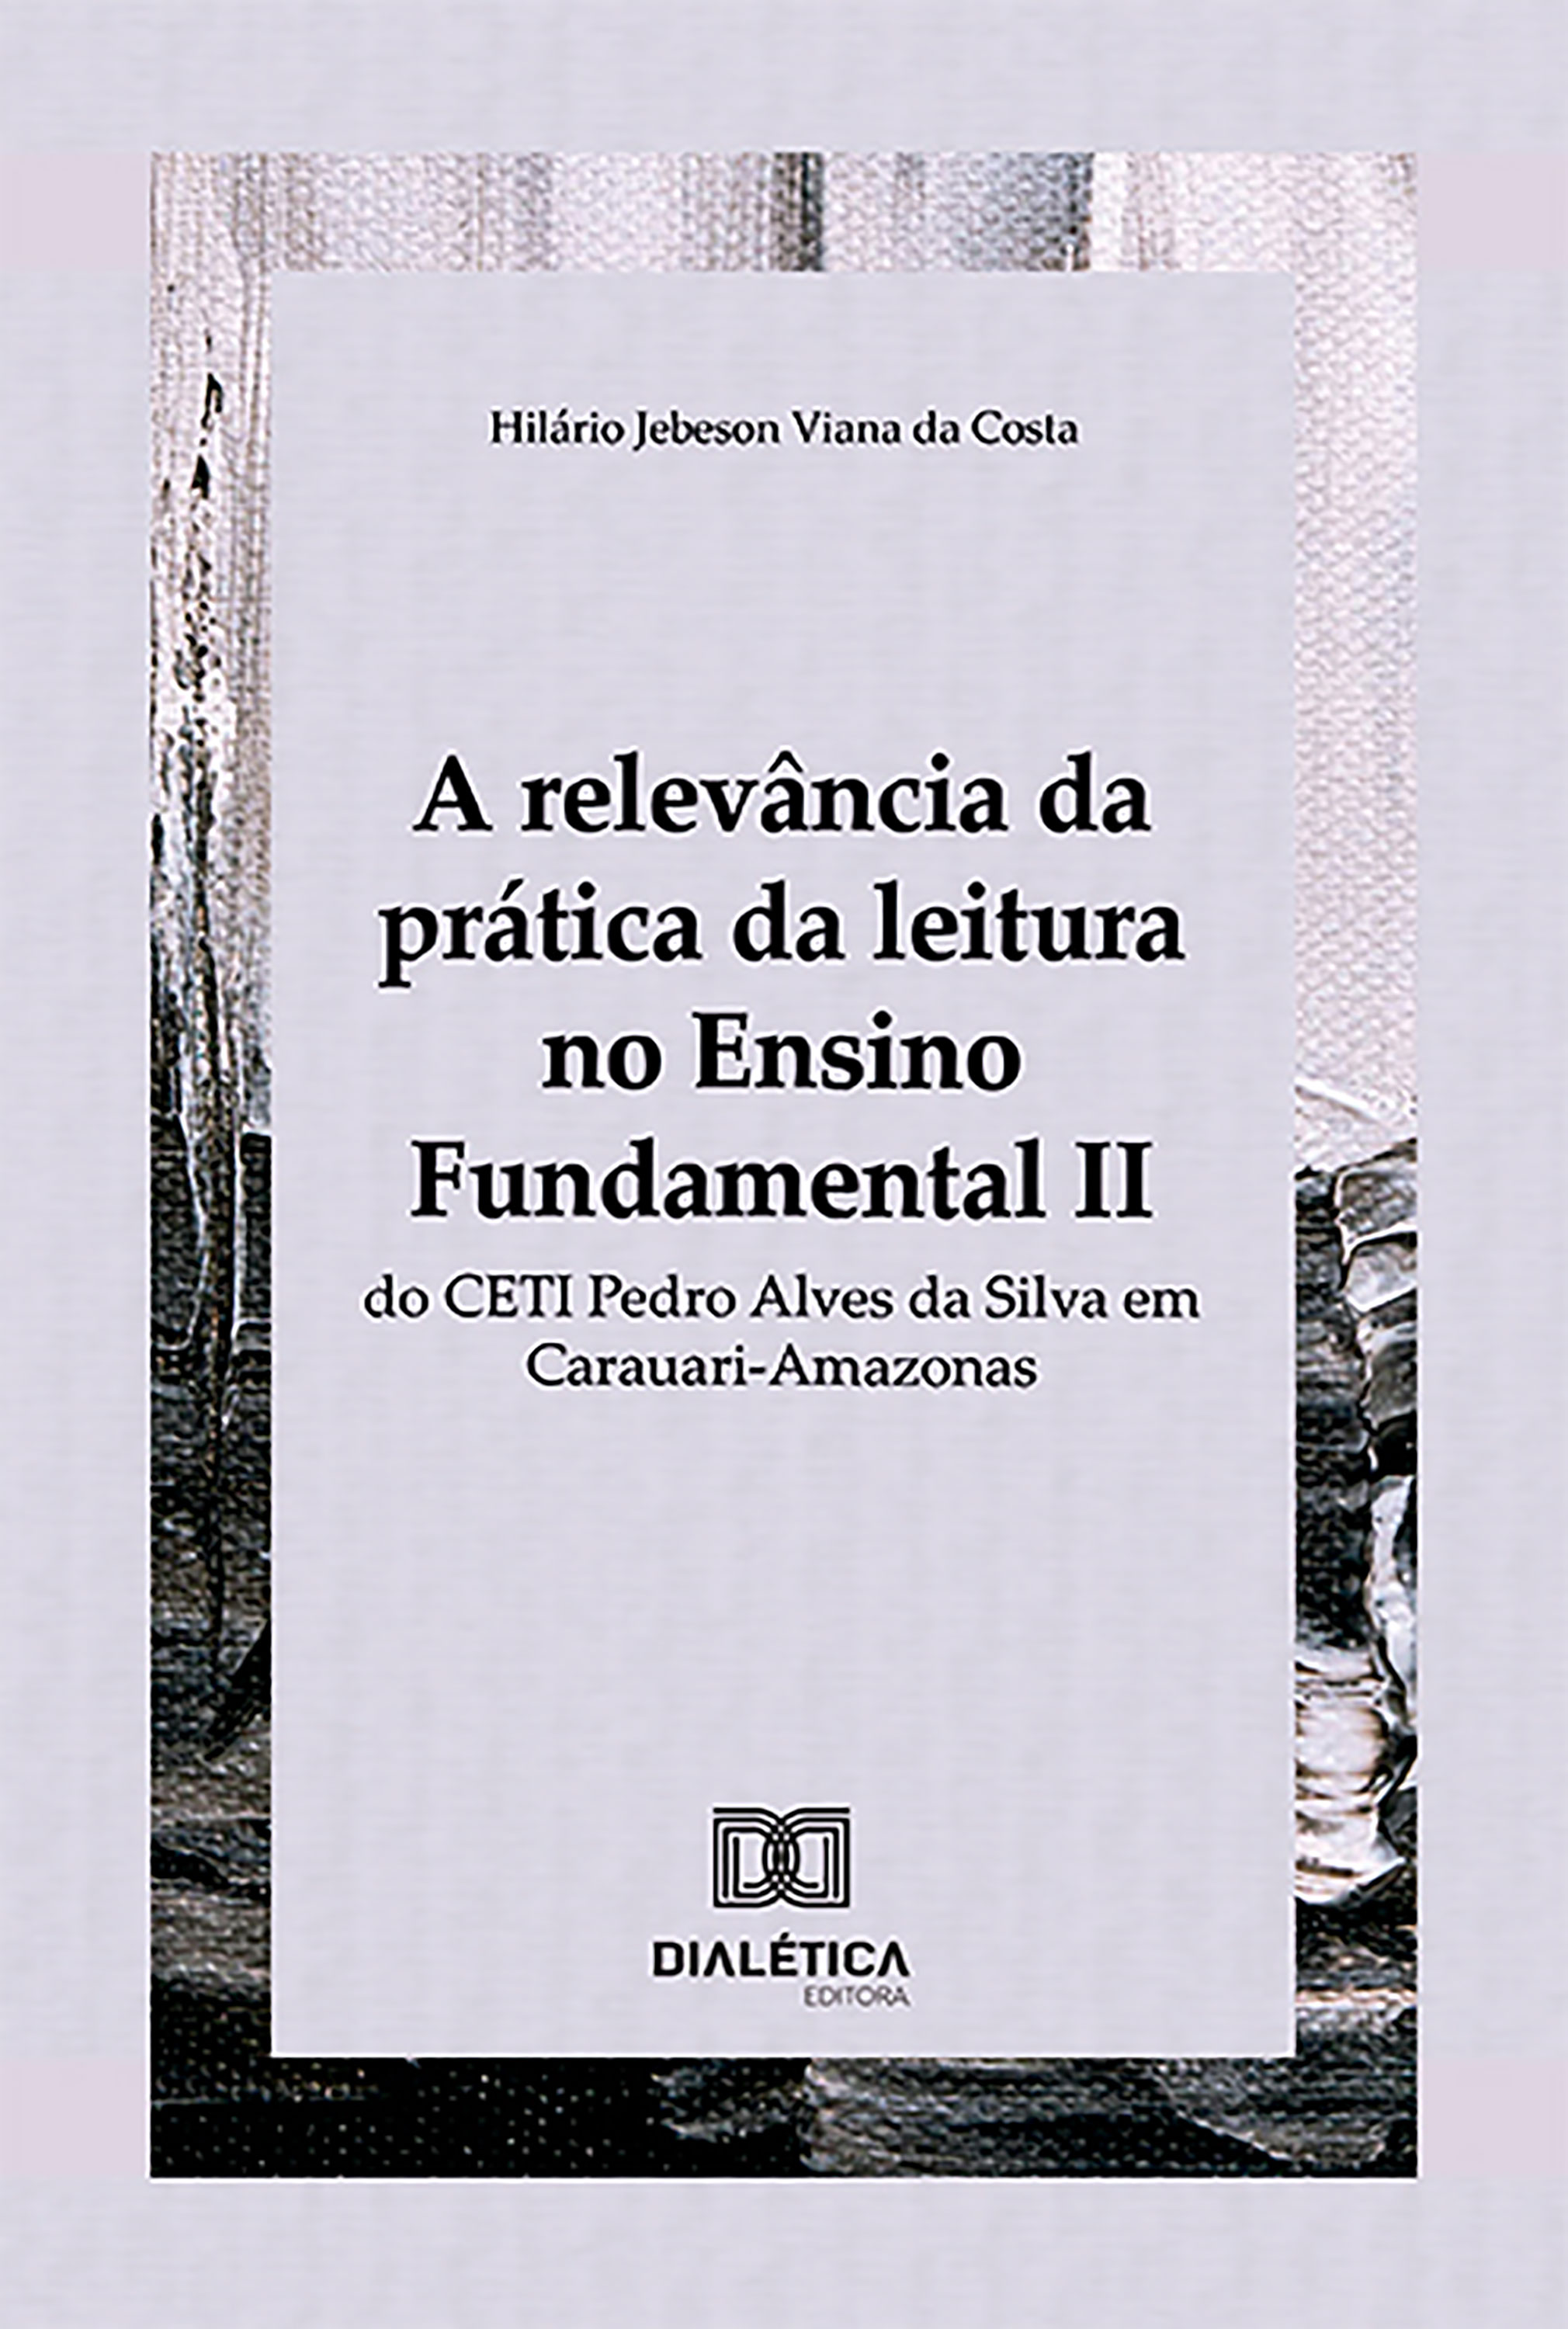 A relevância da prática da leitura no Ensino Fundamental II do CETI Pedro Alves da Silva em Carauari-Amazonas